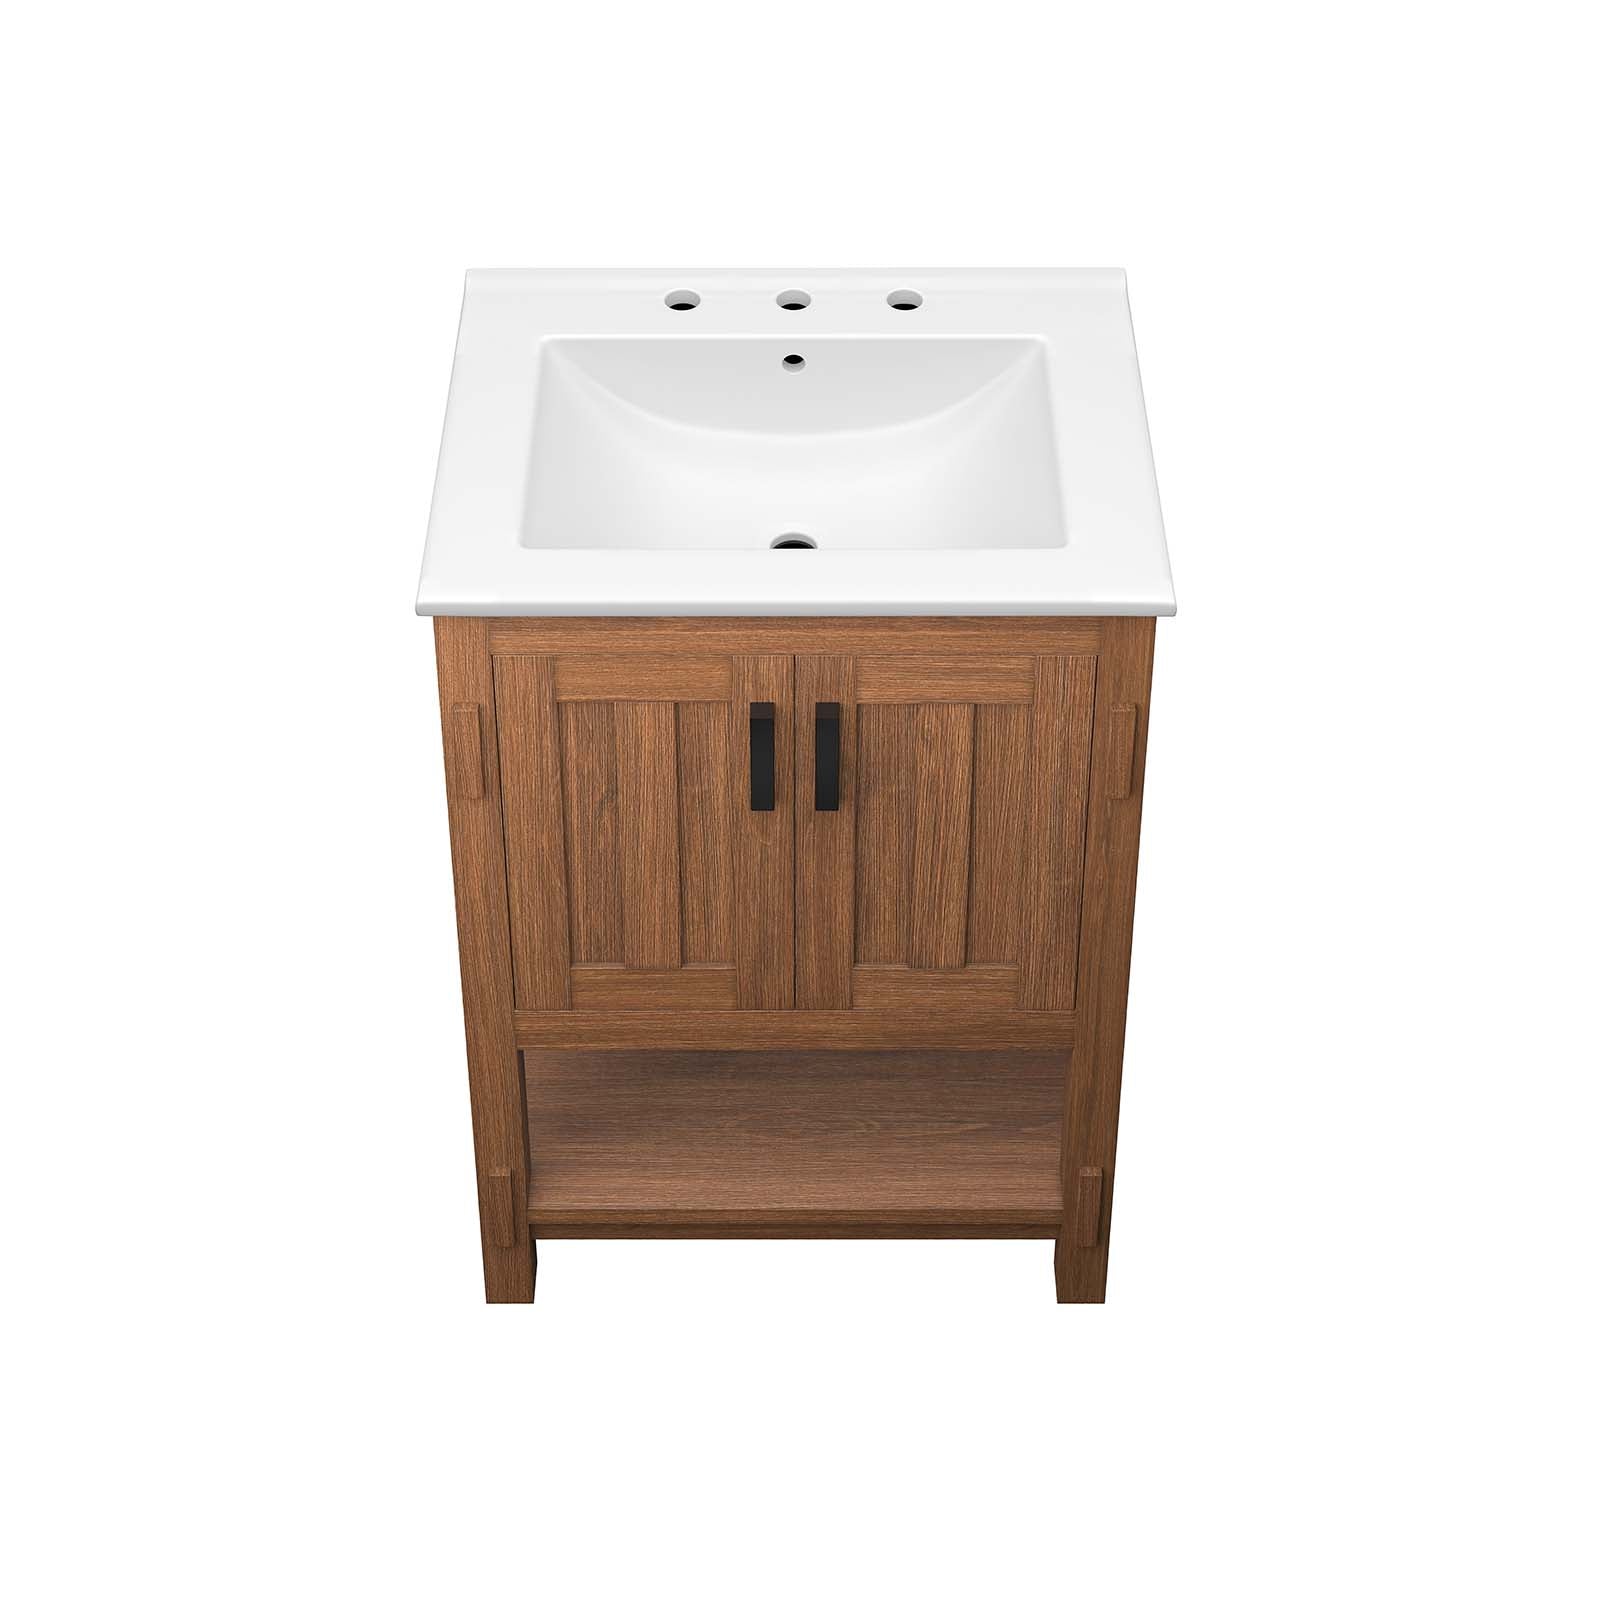 Ashlyn 24” Wood Bathroom Vanity - East Shore Modern Home Furnishings